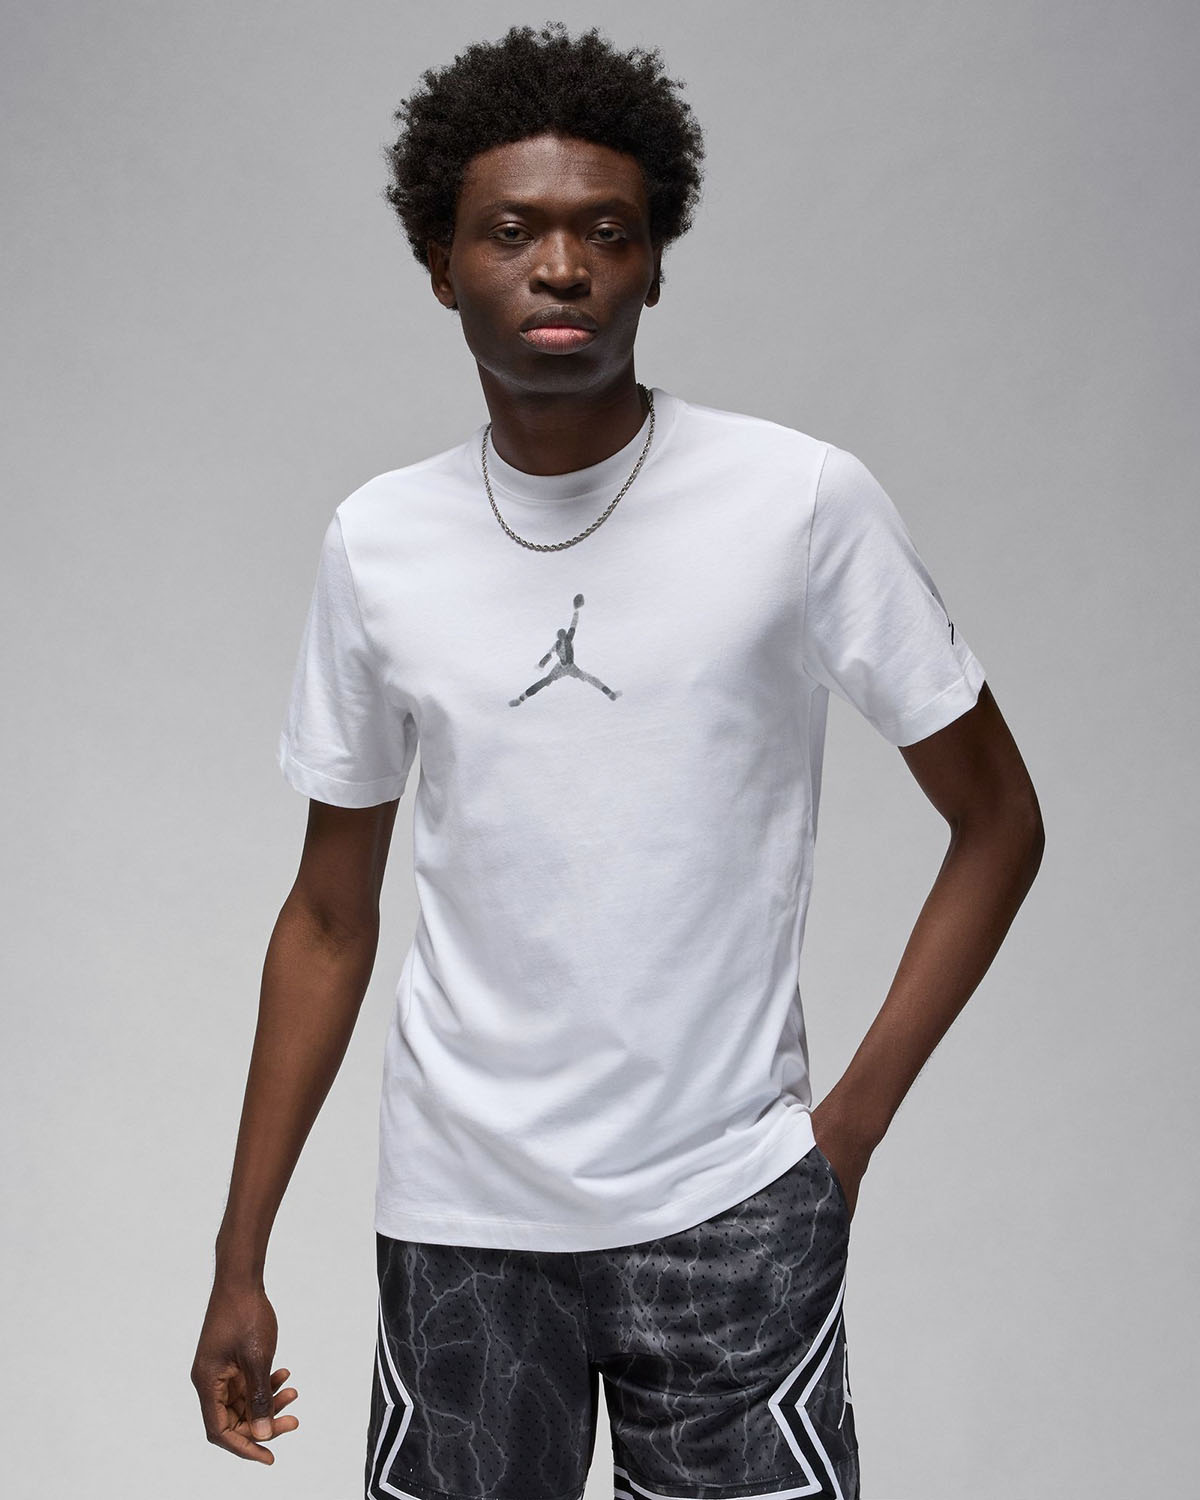 air jordan 13 lakers rivals 414571105 for sale Sneaker T Shirt 1